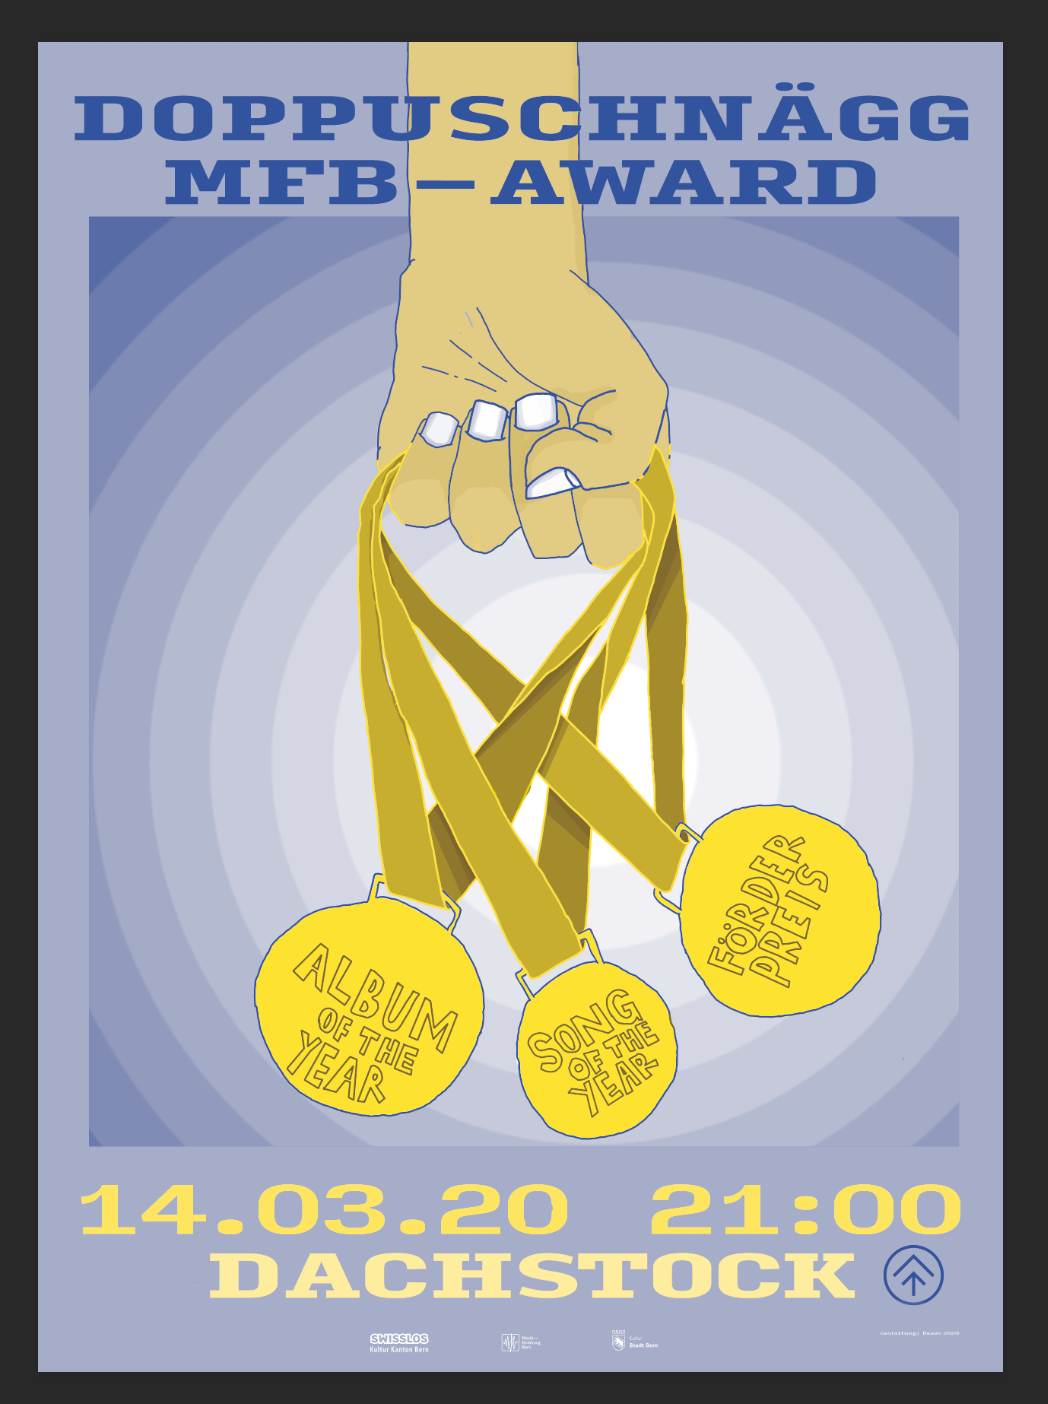 MFB-Award 2019